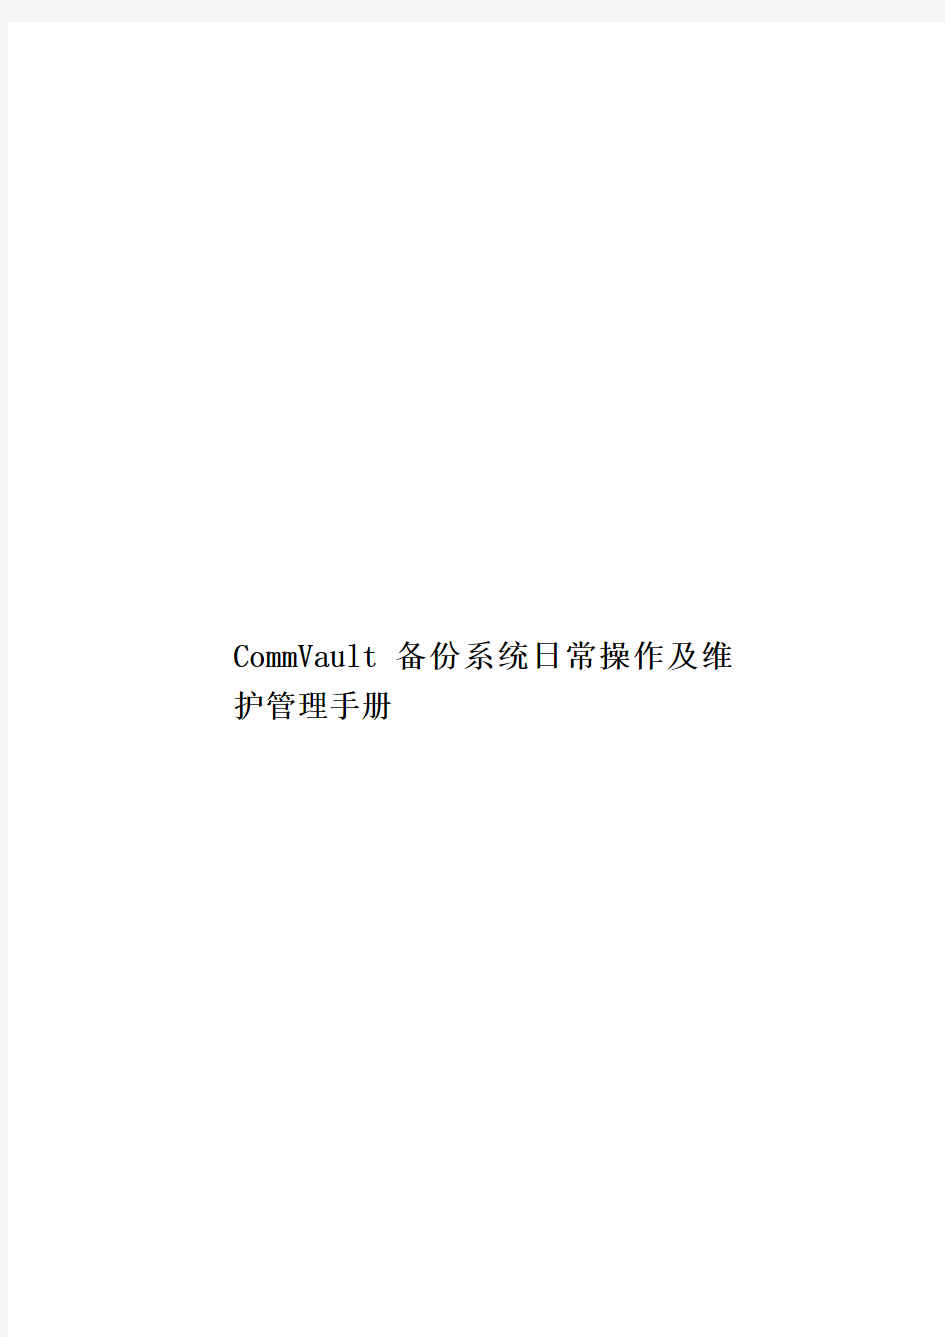 CommVault备份系统日常操作及维护管理手册